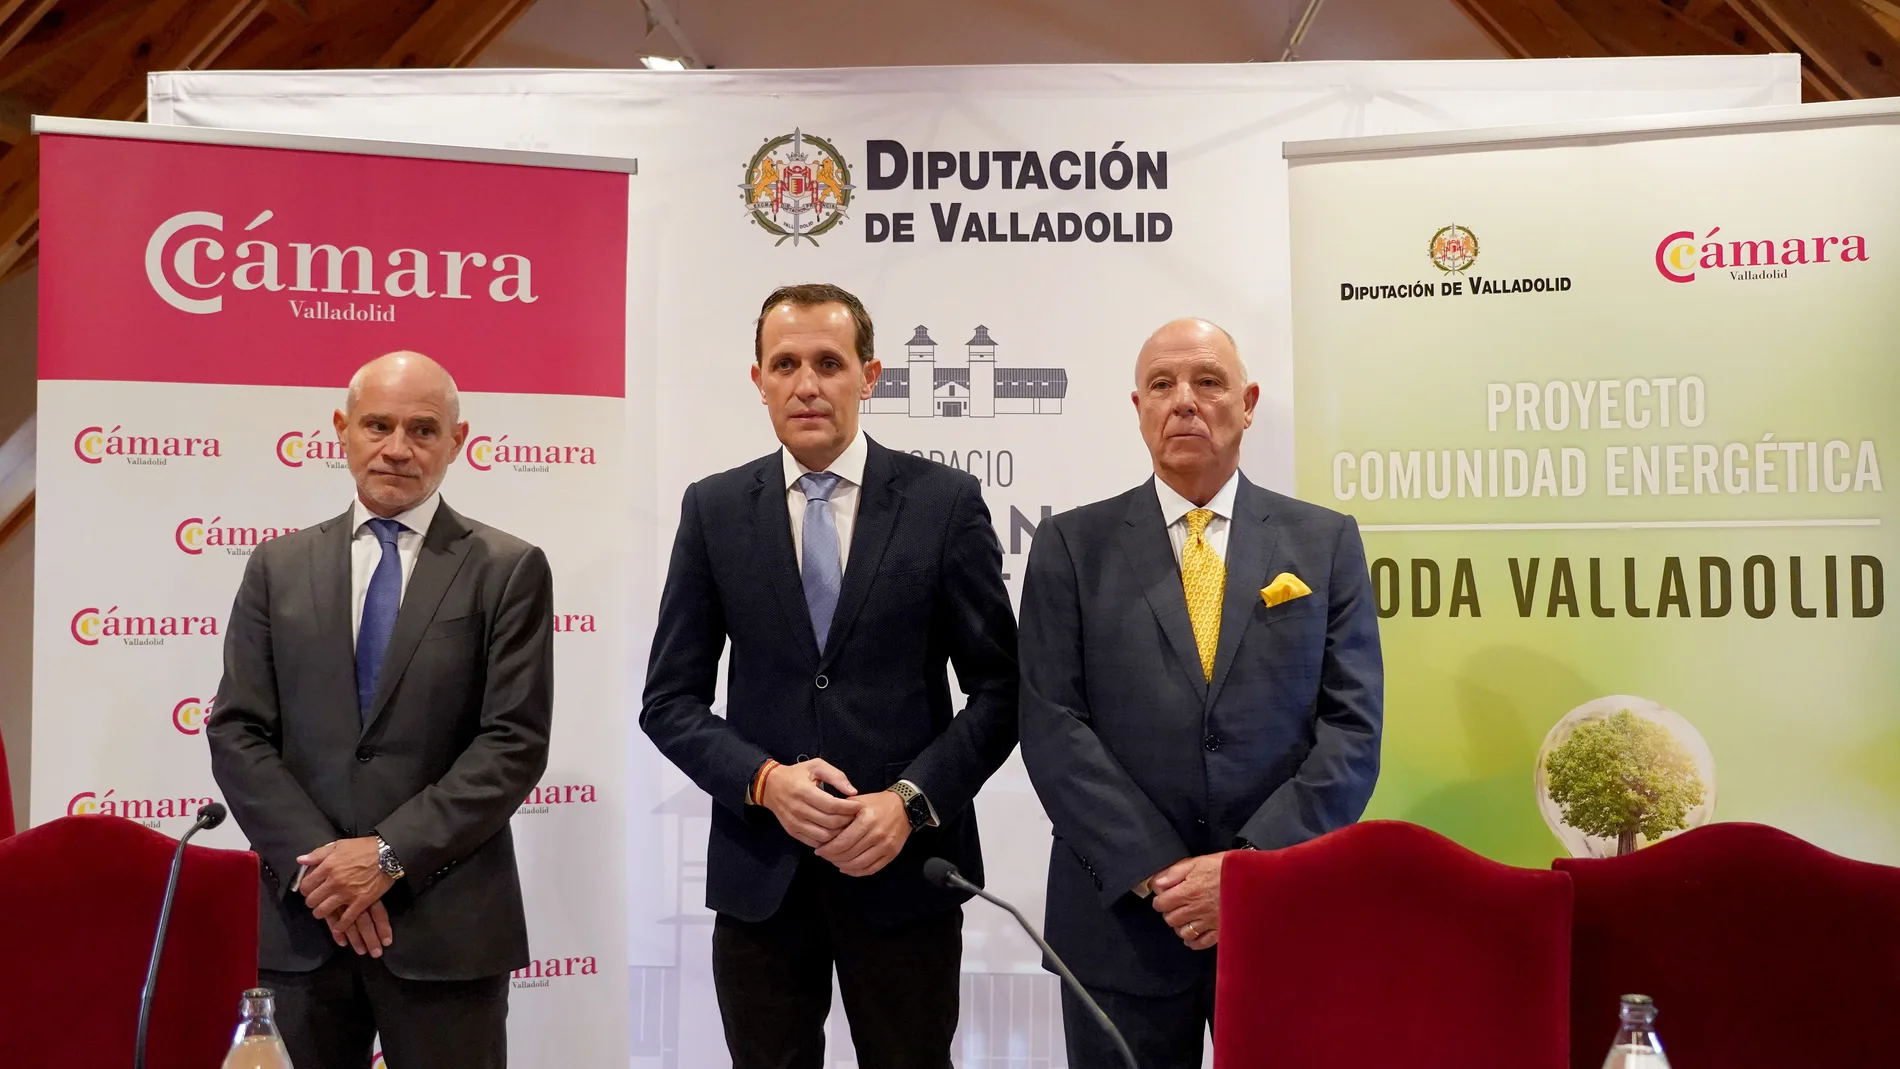 El presidente de la Diputación de Valladolid, Conrado Íscar, y el presidente de la Cámara de Comercio de Valladolid, Víctor Caramanzana, inauguran la jornada de presentación del proyecto Comunidad Energética Toda Valladolid.